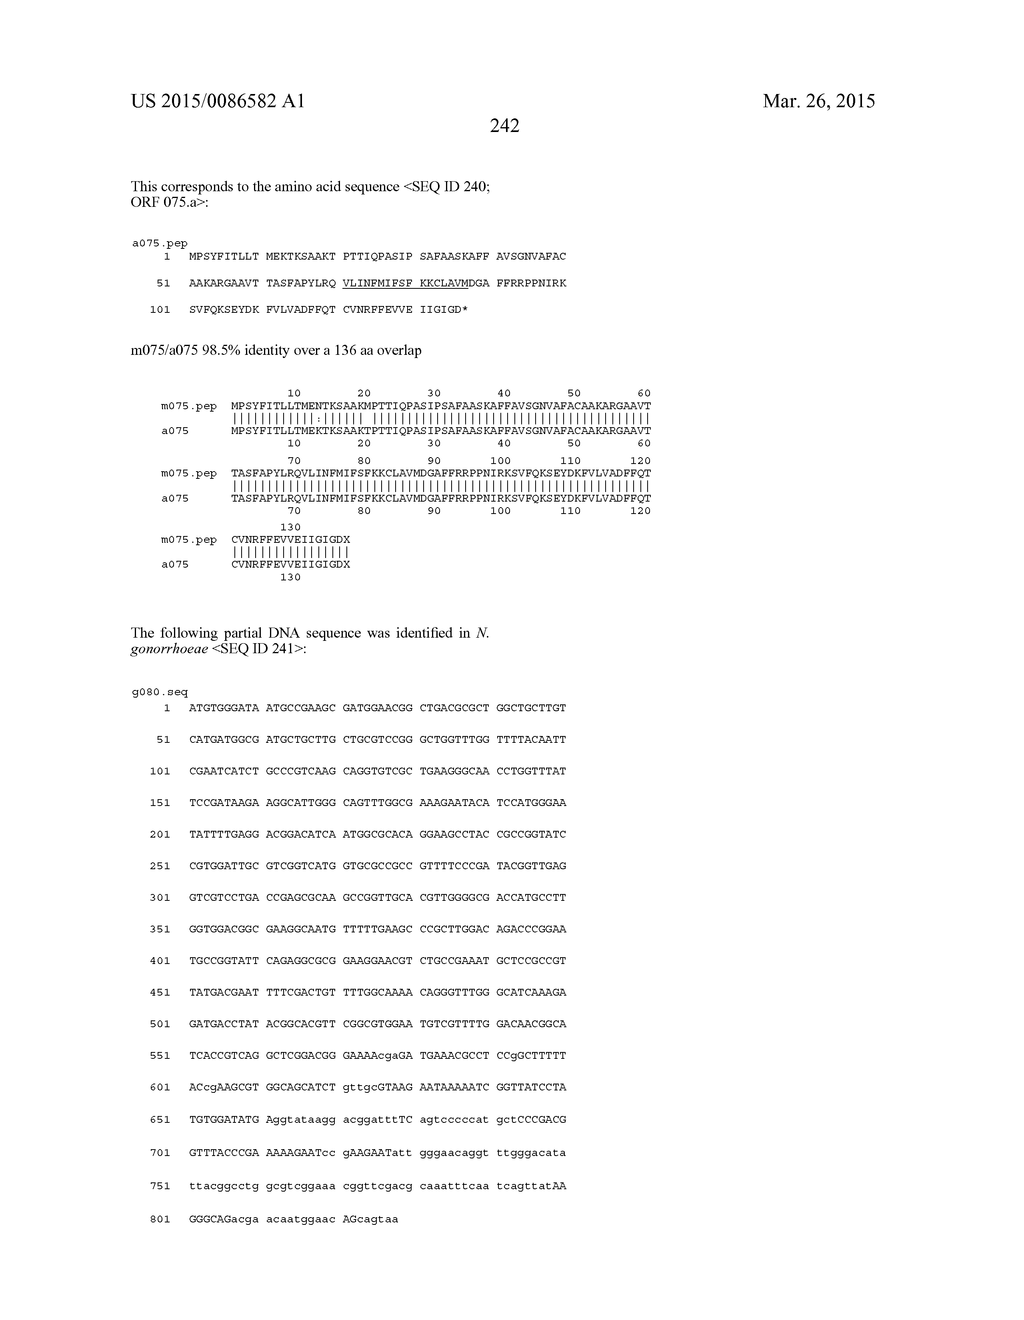 NEISSERIA MENINGITIDIS ANTIGENS AND COMPOSITIONS - diagram, schematic, and image 274